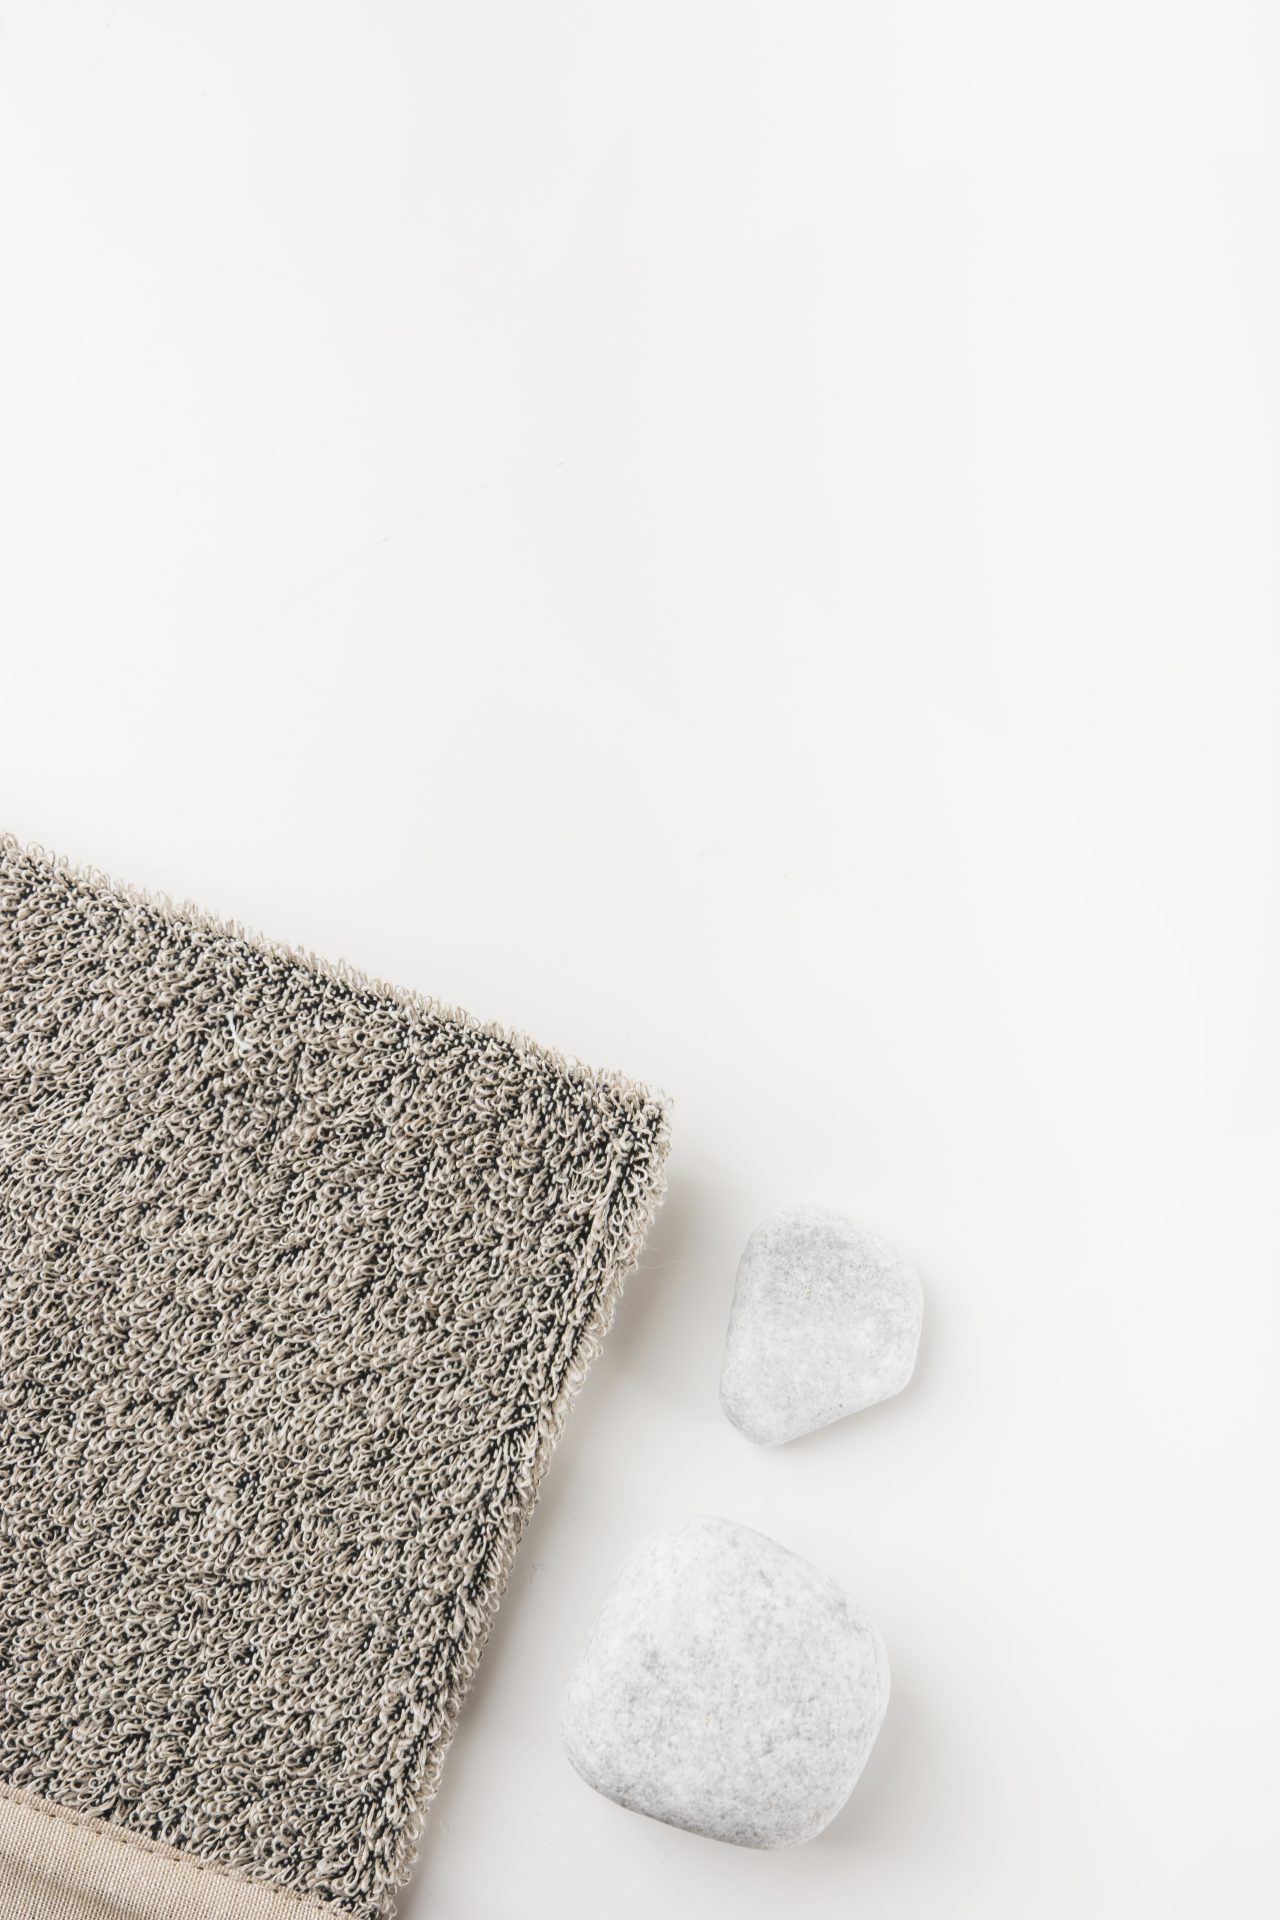 Mengenal Bahan Semi Wool: Karakteristik, Kelebihan Dan 4 Contoh Produknya - Karpet Semi Wool